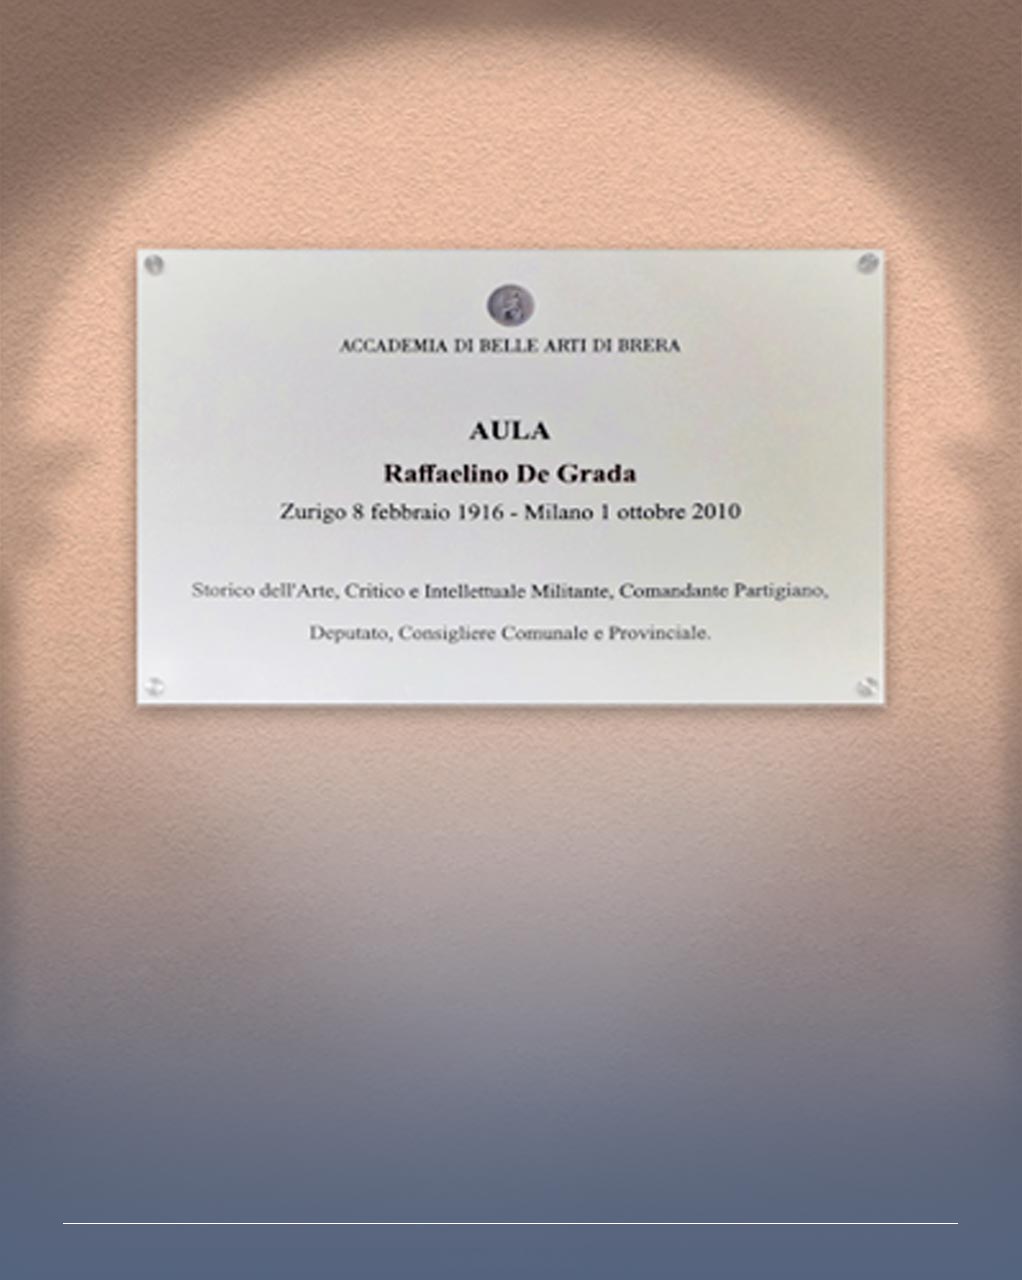 Immagine di una targa commemorativa dedicata a Raffaelino De Grada